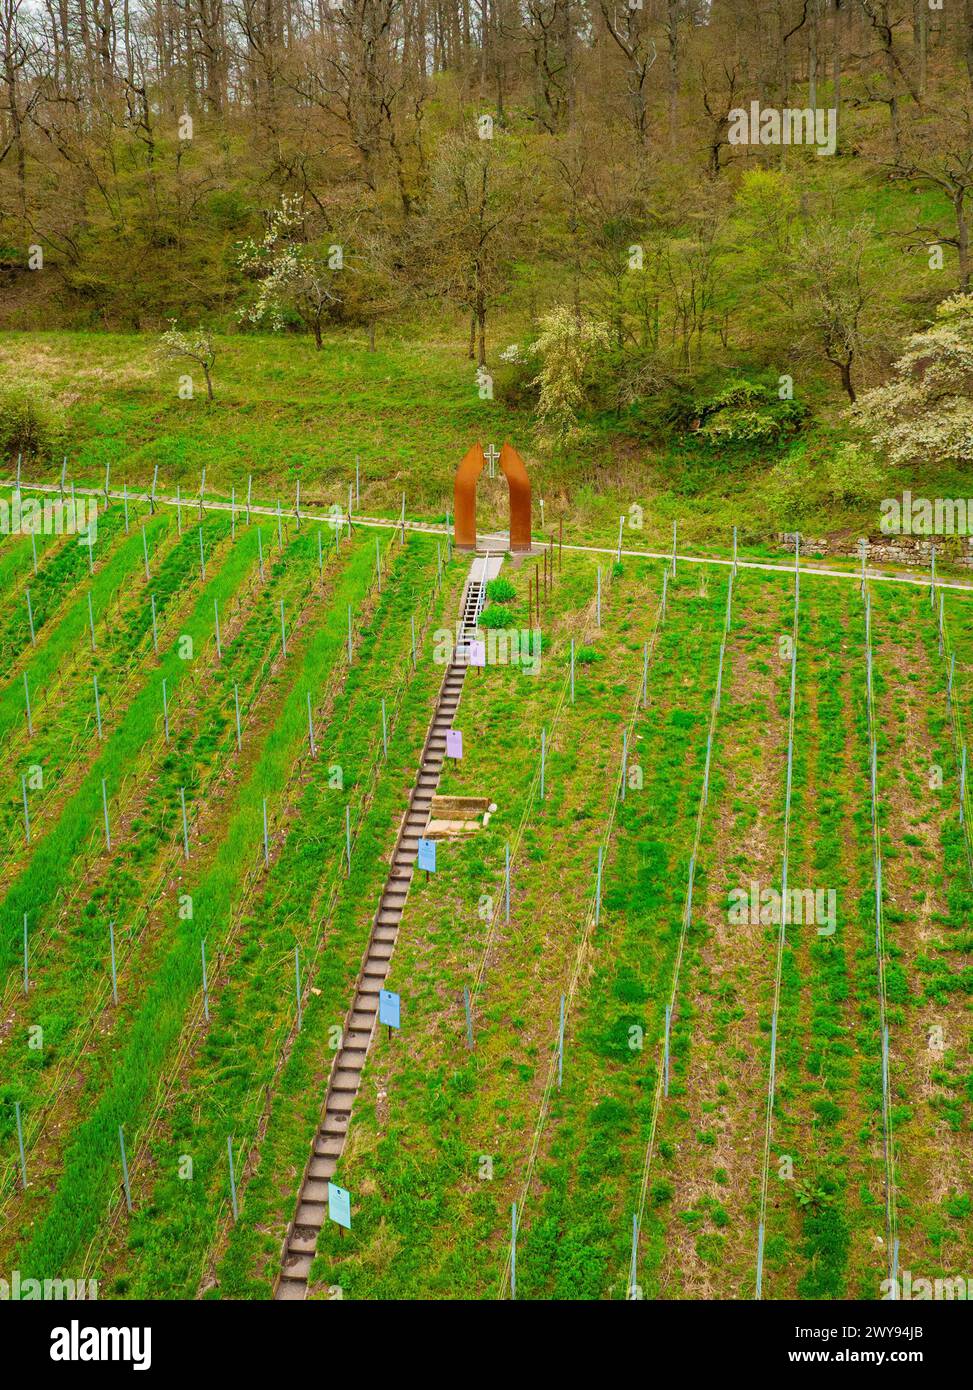 Les gens admirent une œuvre d'art au milieu d'un vignoble verdoyant, Jesus Grace Chruch, Weitblickweg, randonnée de Pâques, Hohenhaslach, Allemagne Banque D'Images